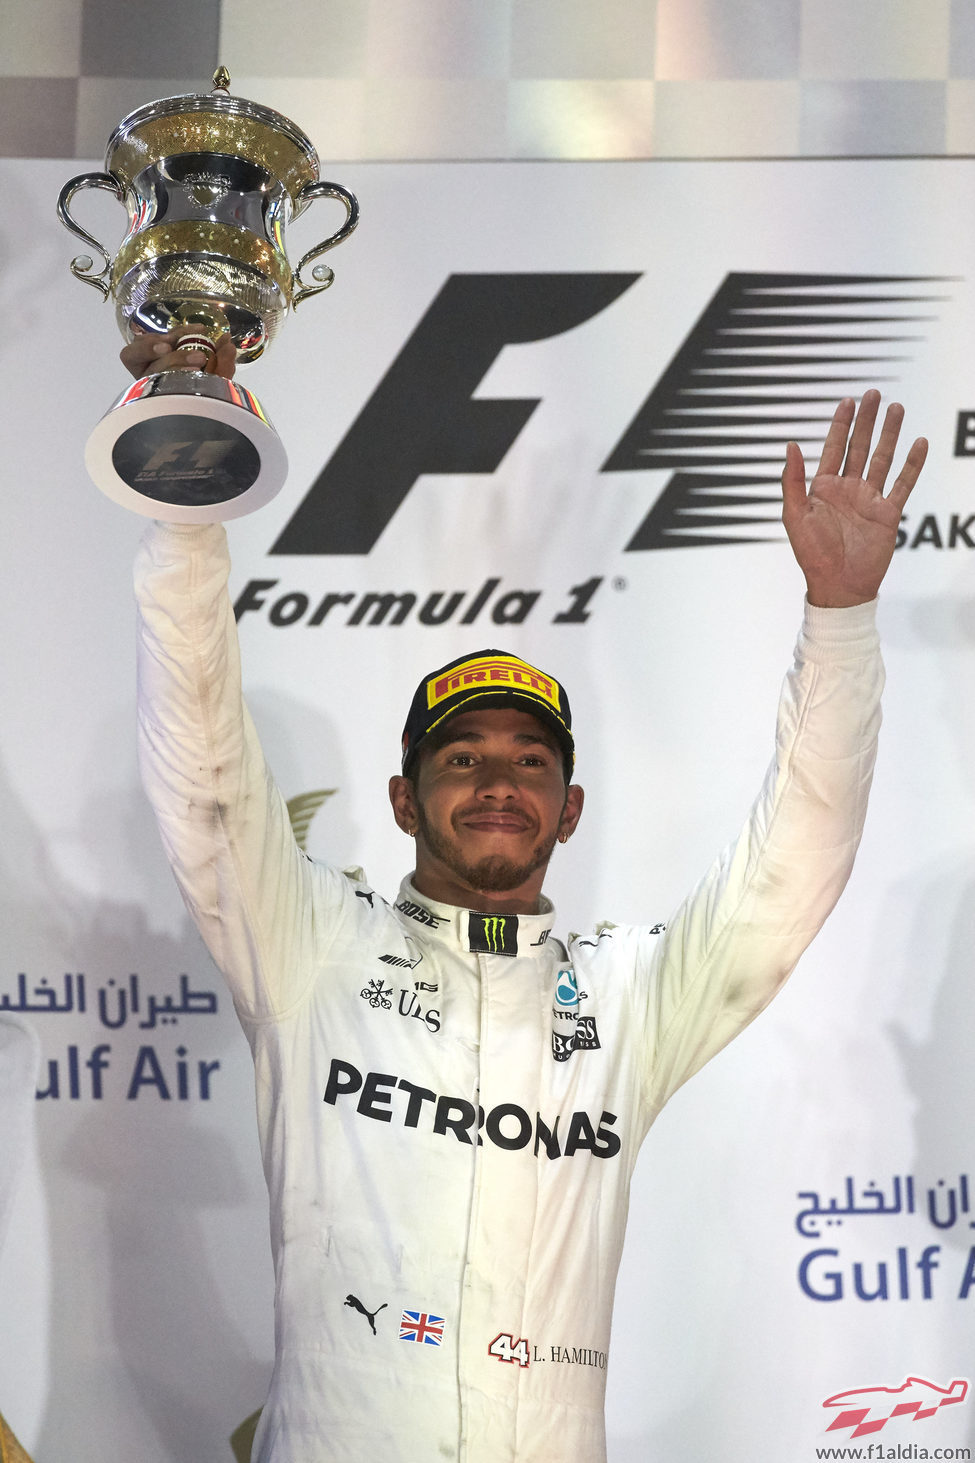 Lewis Hamilton alza el trofeo de segundo clasificado